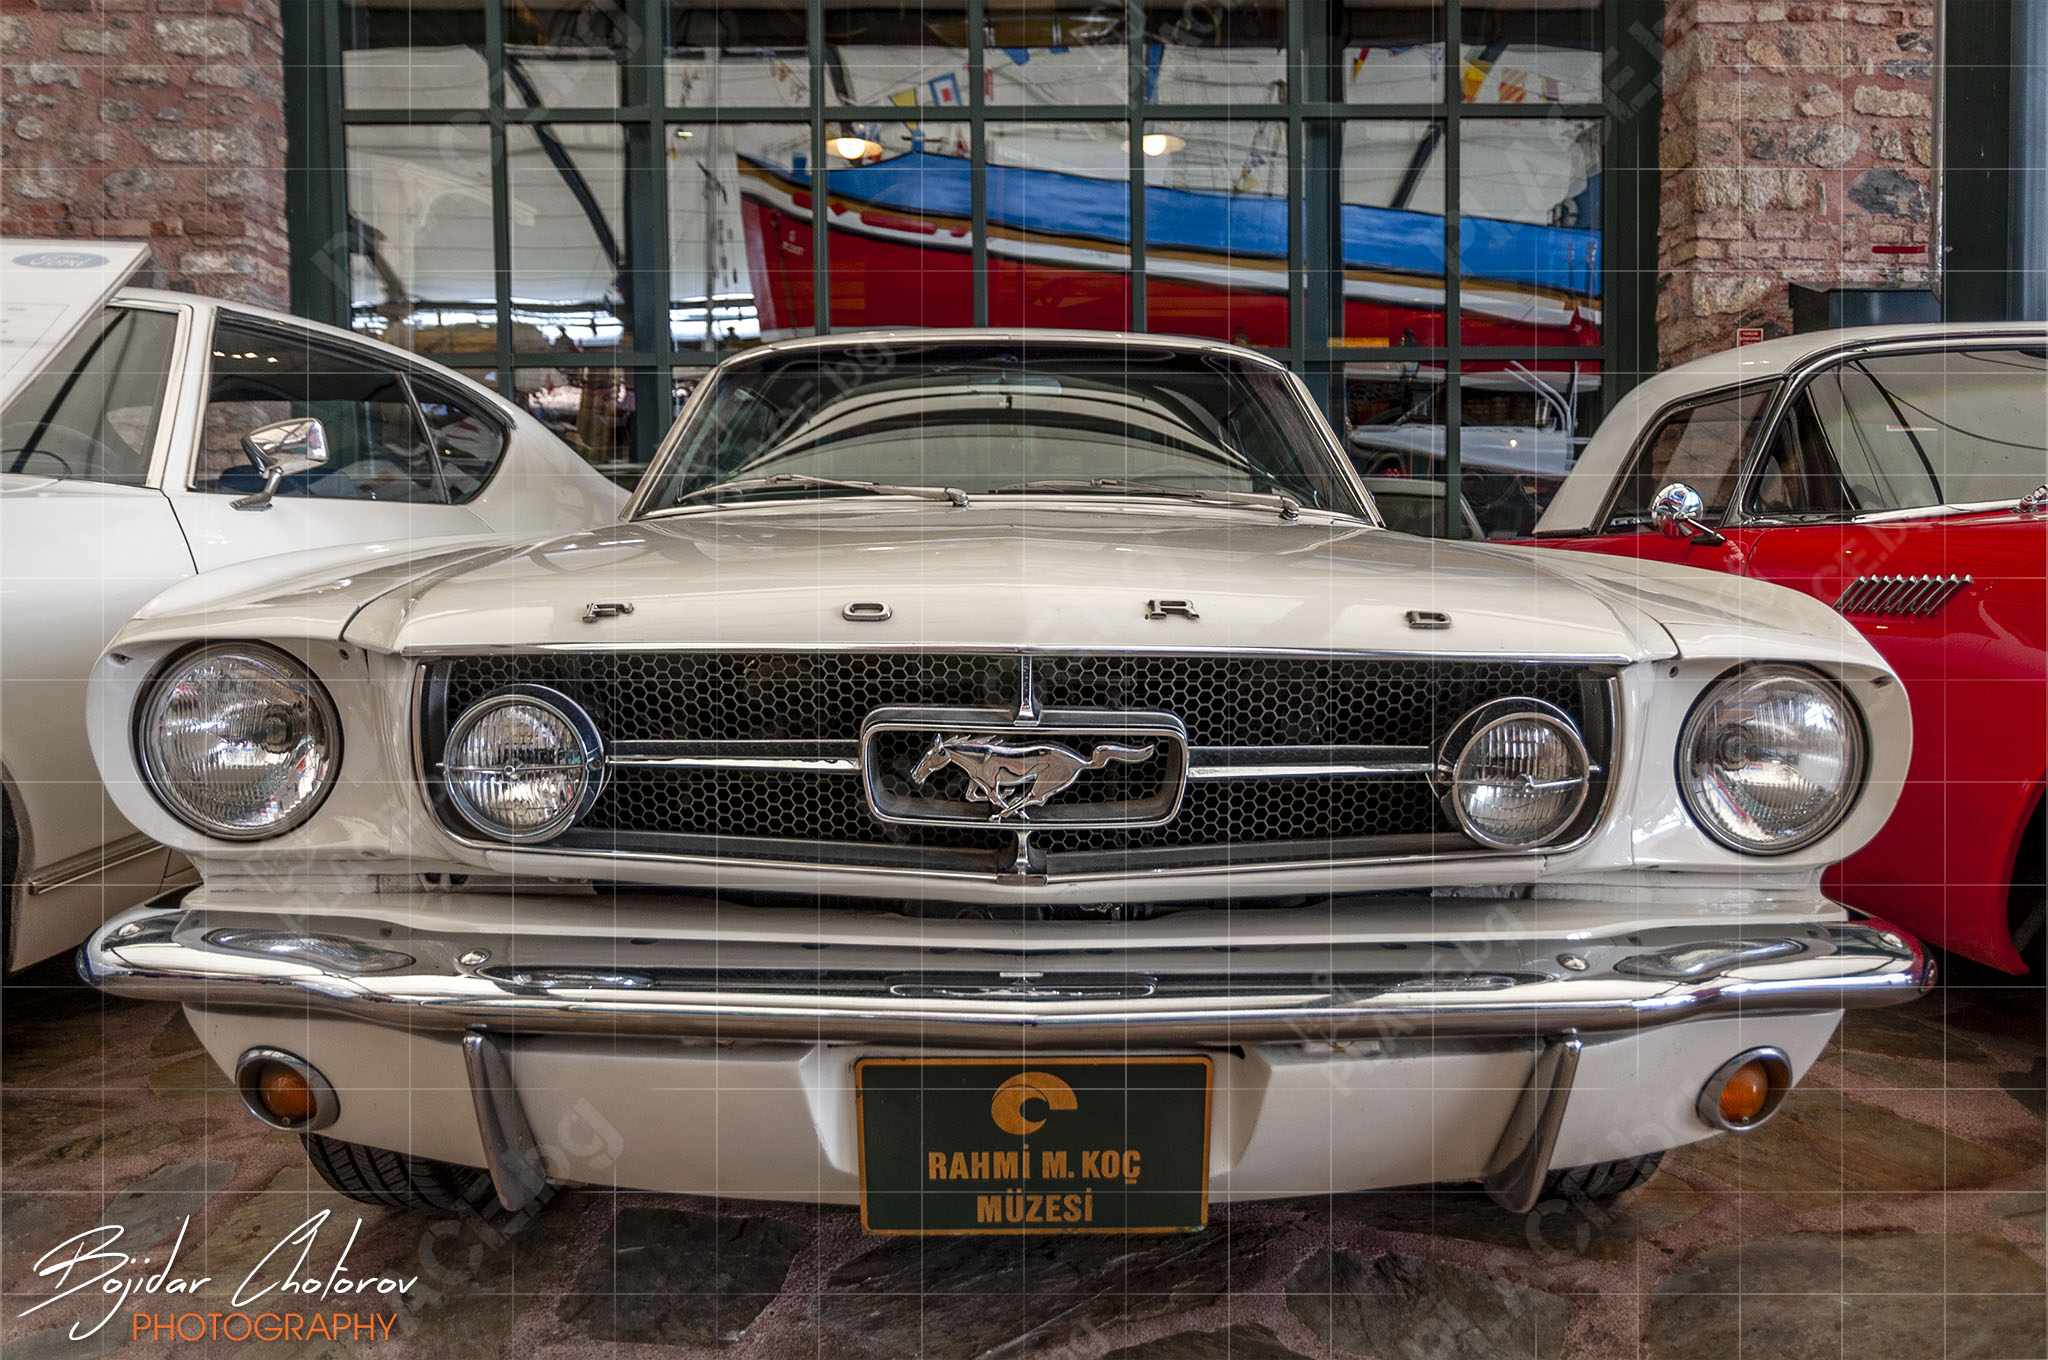 Ford Mustang, част от експозицията с ретро коли в музеят Рахми М. Коч (DSC8367)